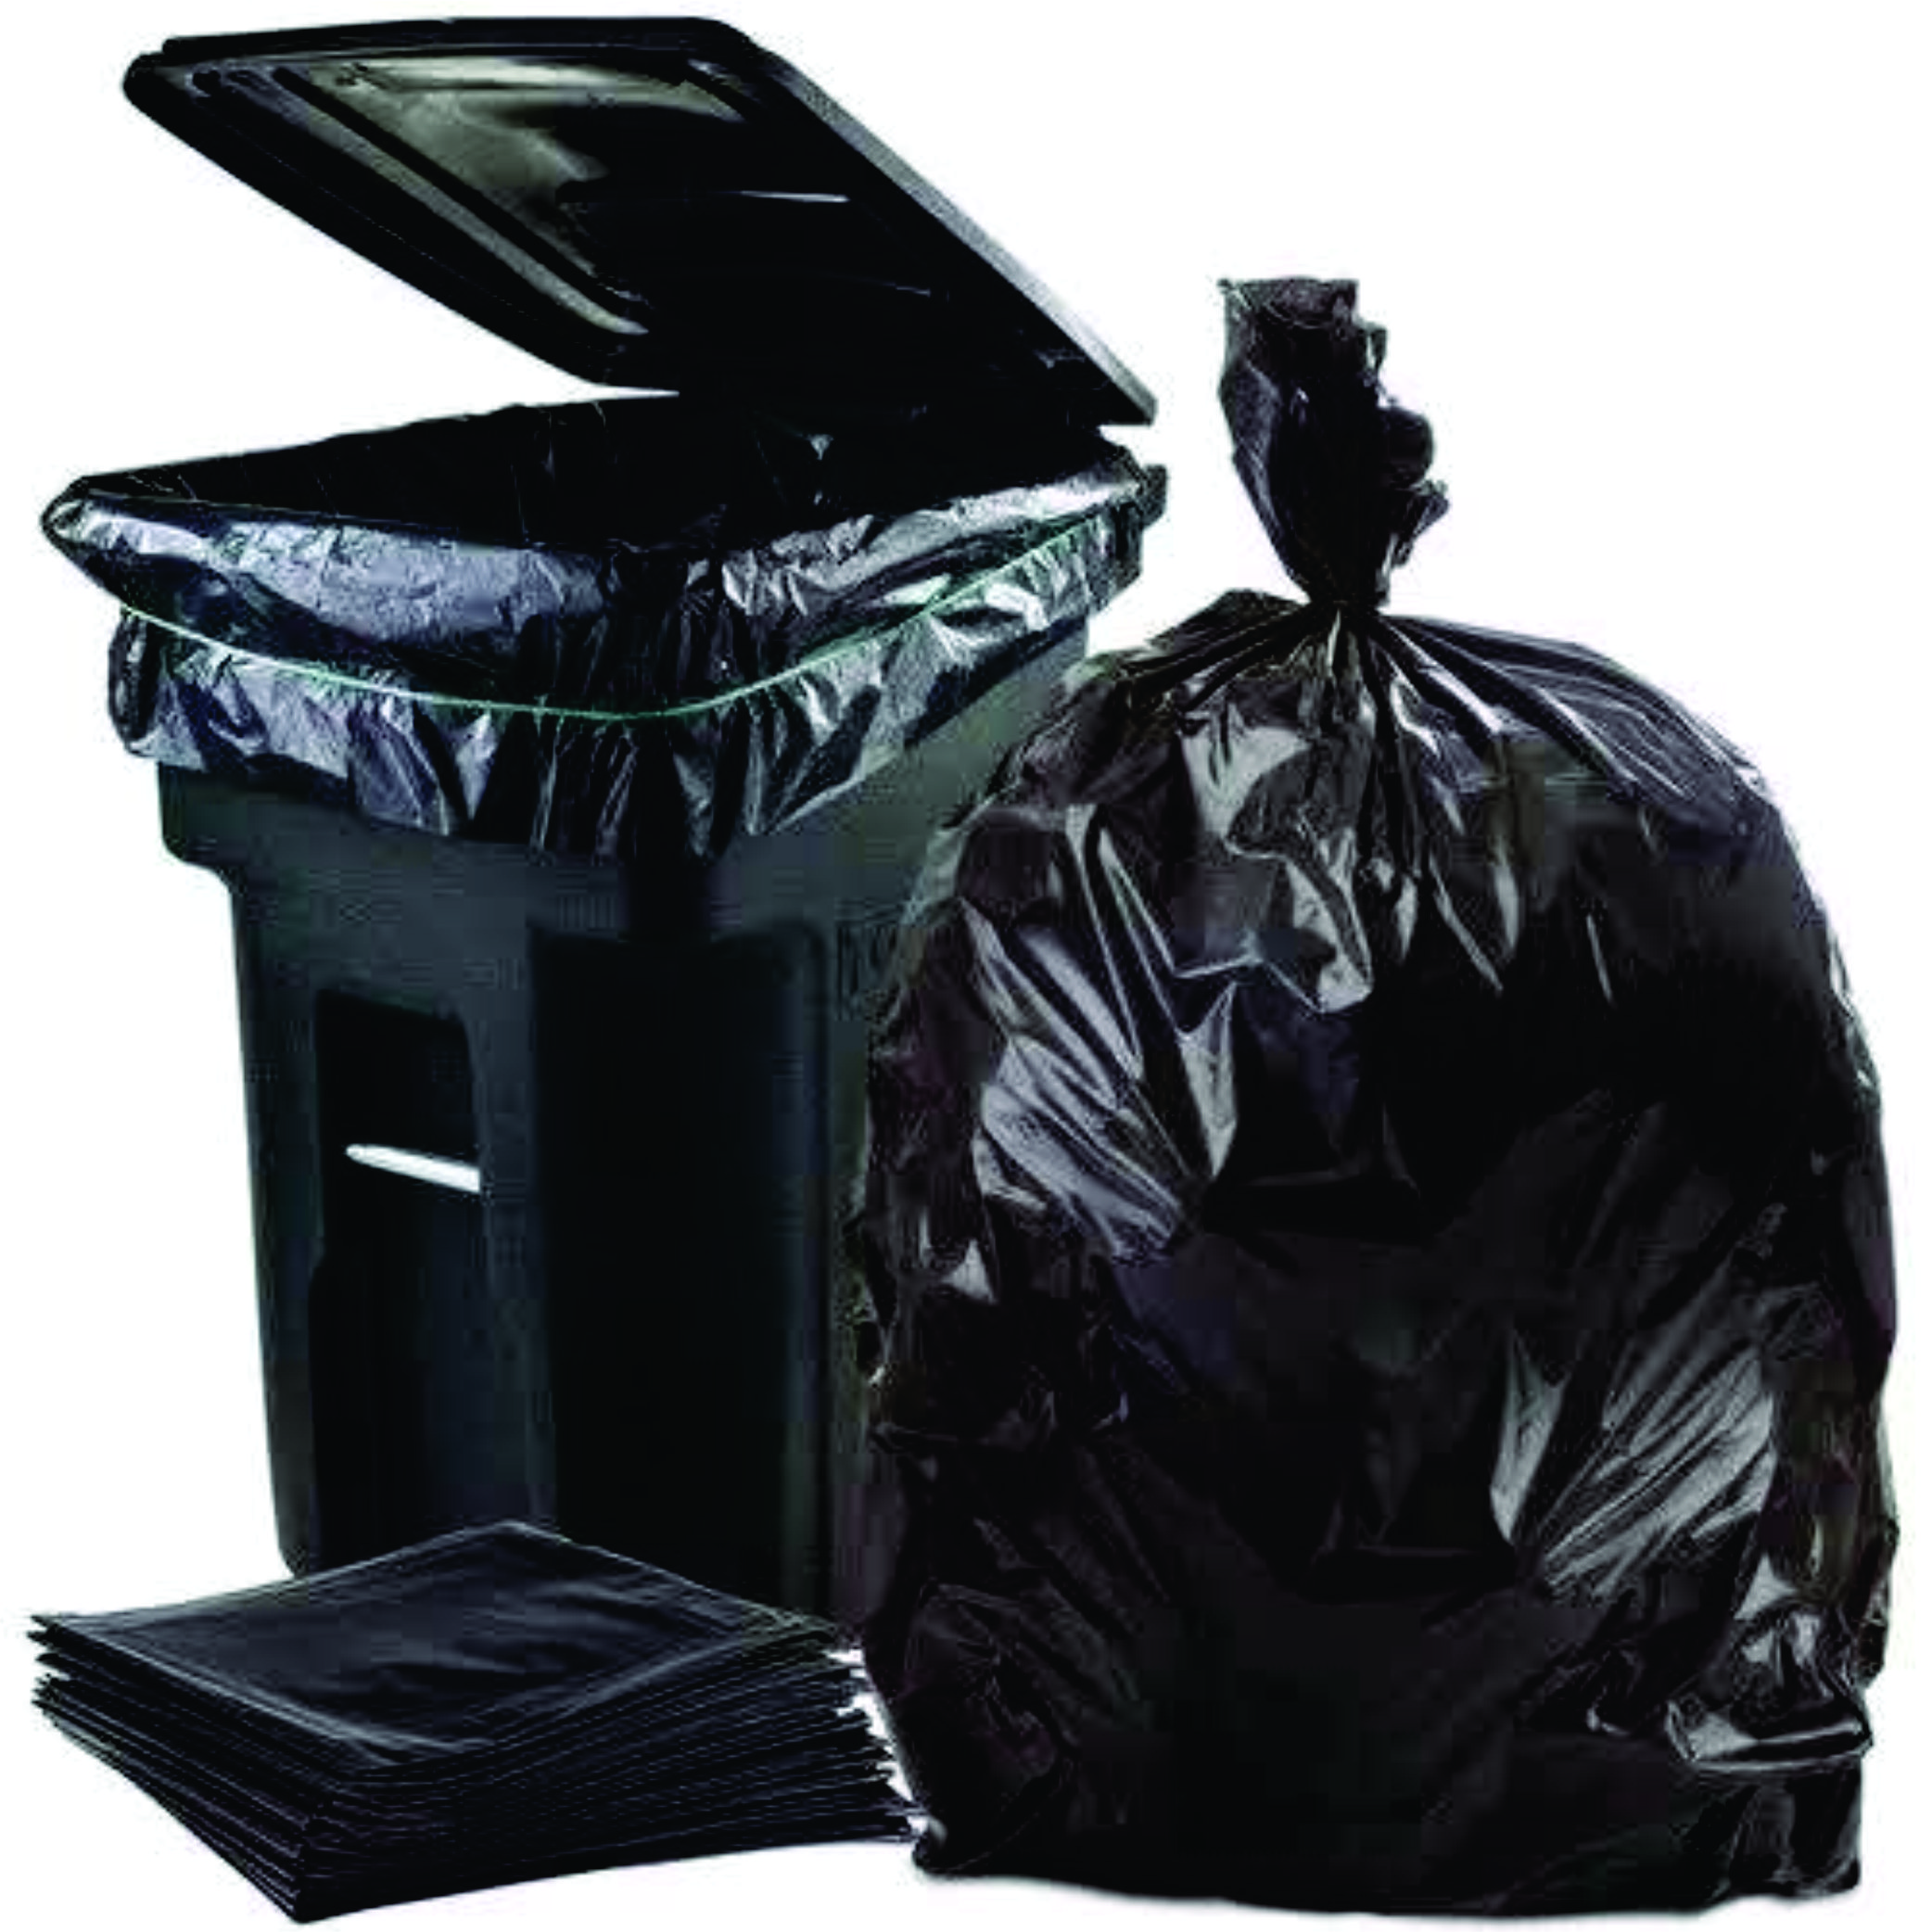 Plastik Kantong Sampah Ukuran Besar Hitam Plastic Poly Trash Bag Hd Packing Black Tebal 7949